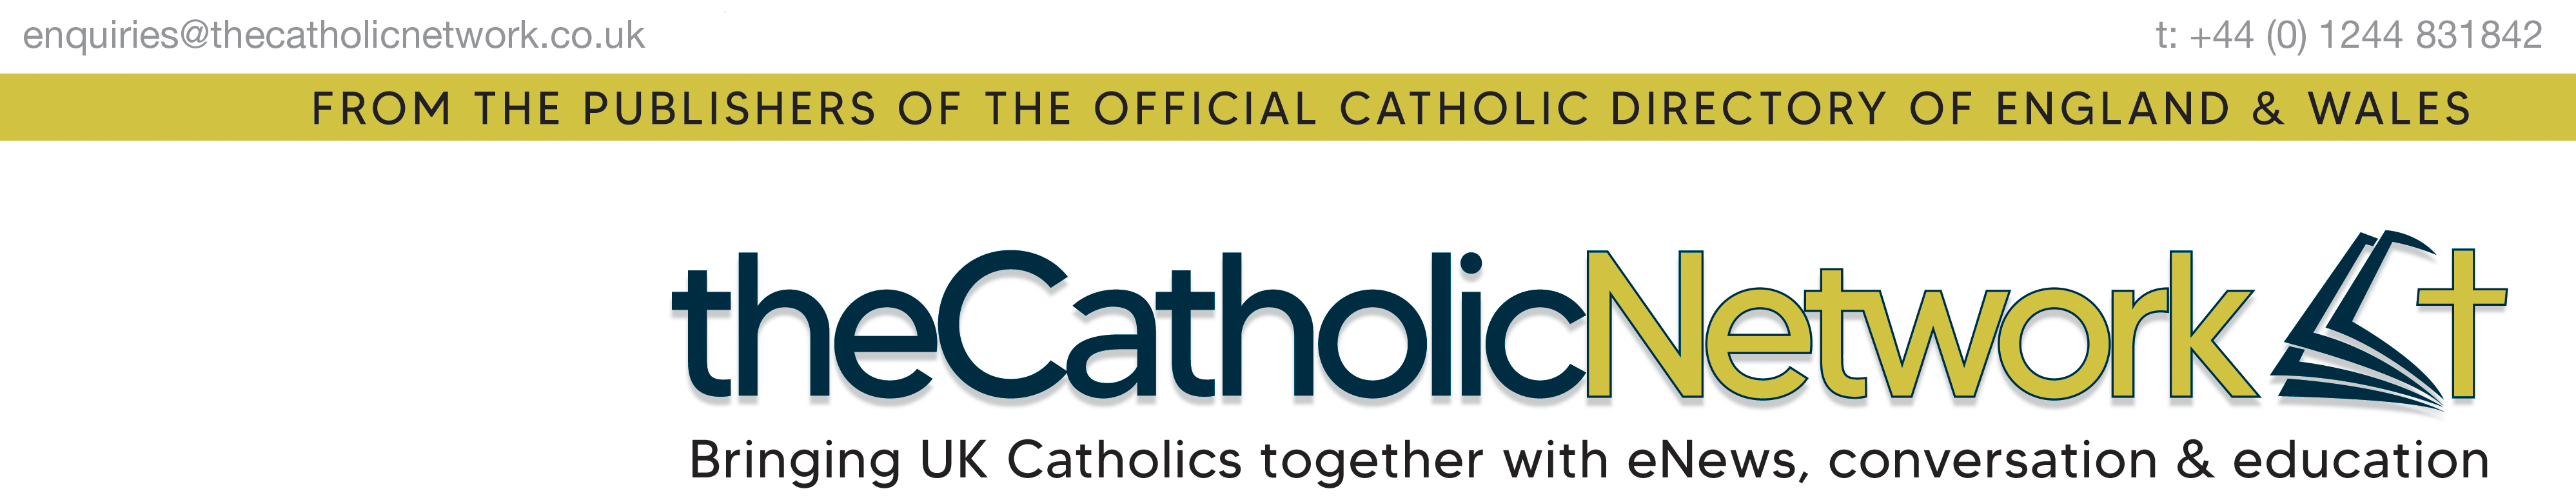 The Catholic Network